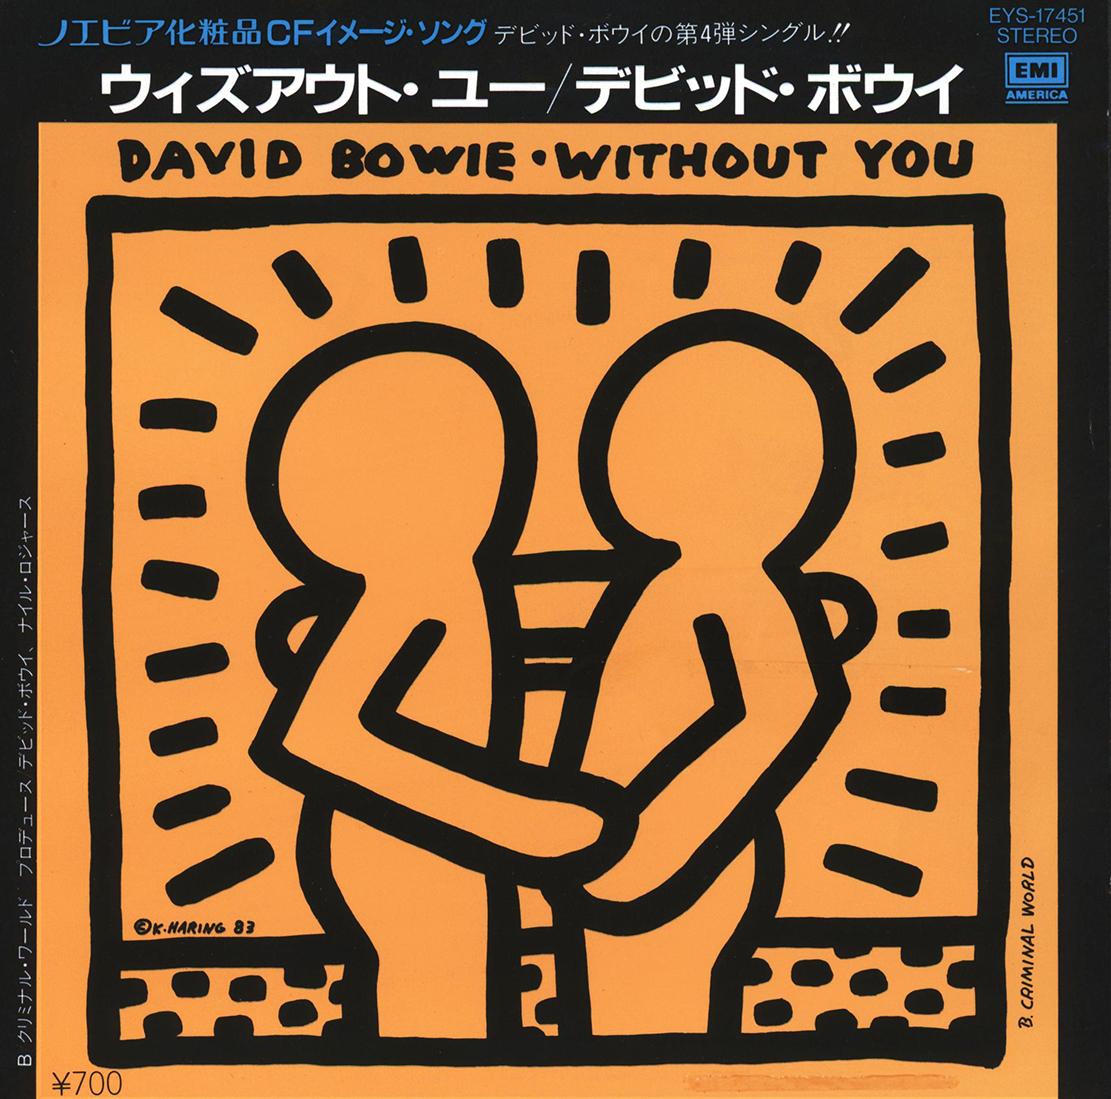 Keith Haring Schallplattenkunst 1983:
David BOWIE "Without You" Ein seltenes, heiß begehrtes Vinyl-Cover mit einem Original-Artwork von Keith Haring. Seltene Japan 1. Pressung 1983, begleitet von der Original-Schallplatte:

Medium: Off-Set